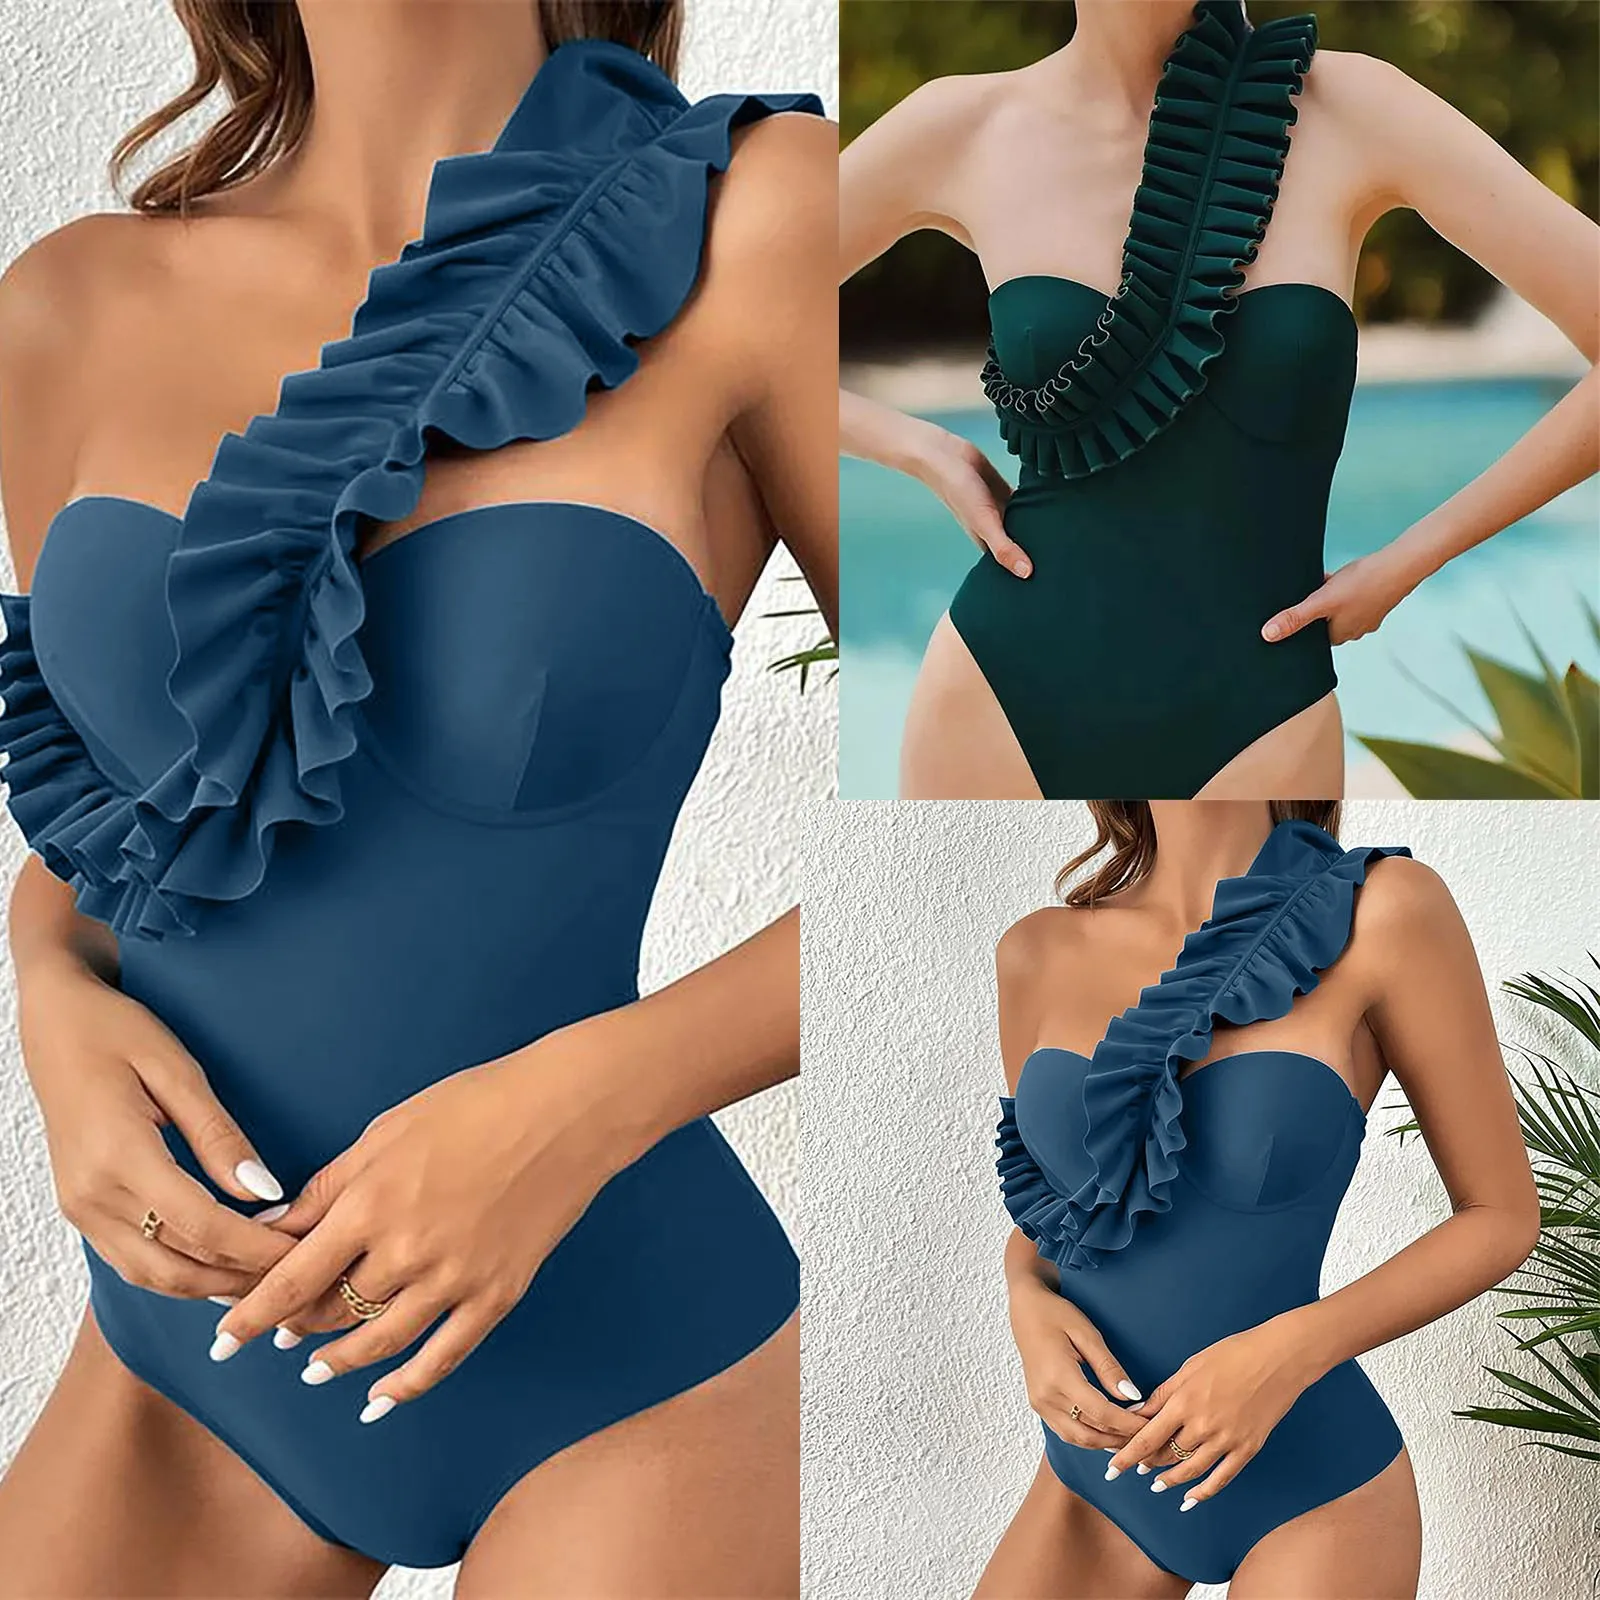 

Women's Fashion One-Piece Solid Color One-Shoulder Bikini Swimsuit (With Chest Pad Without Steel Bra) Stroj kapielowy Damski